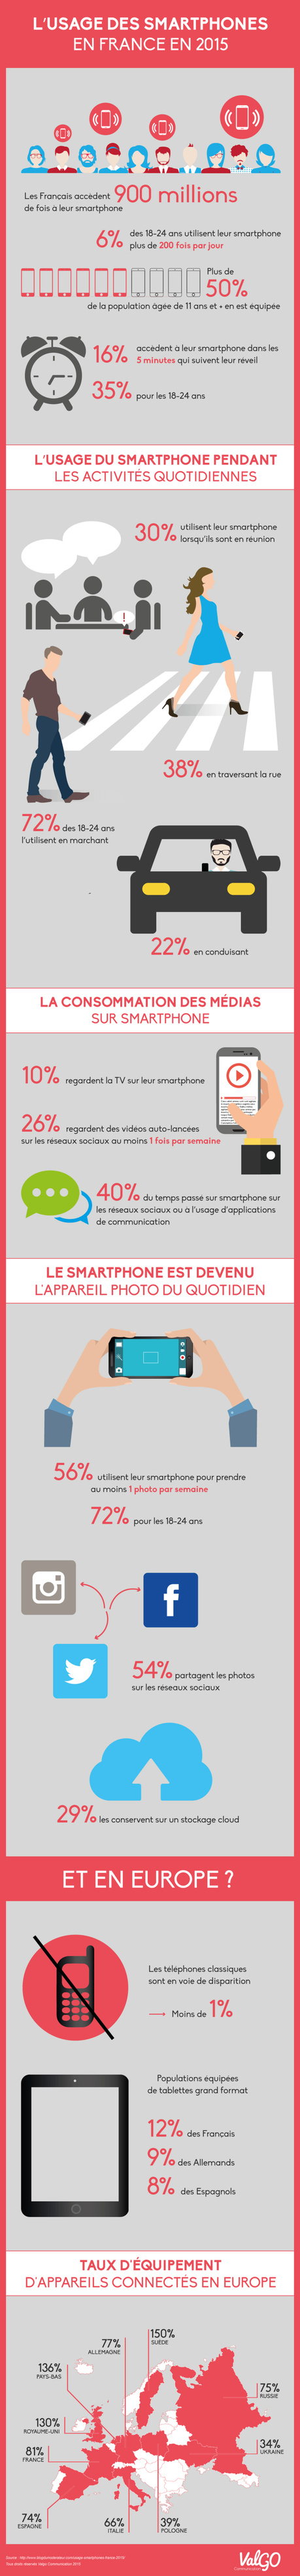 Usage-smartphones-France-2015